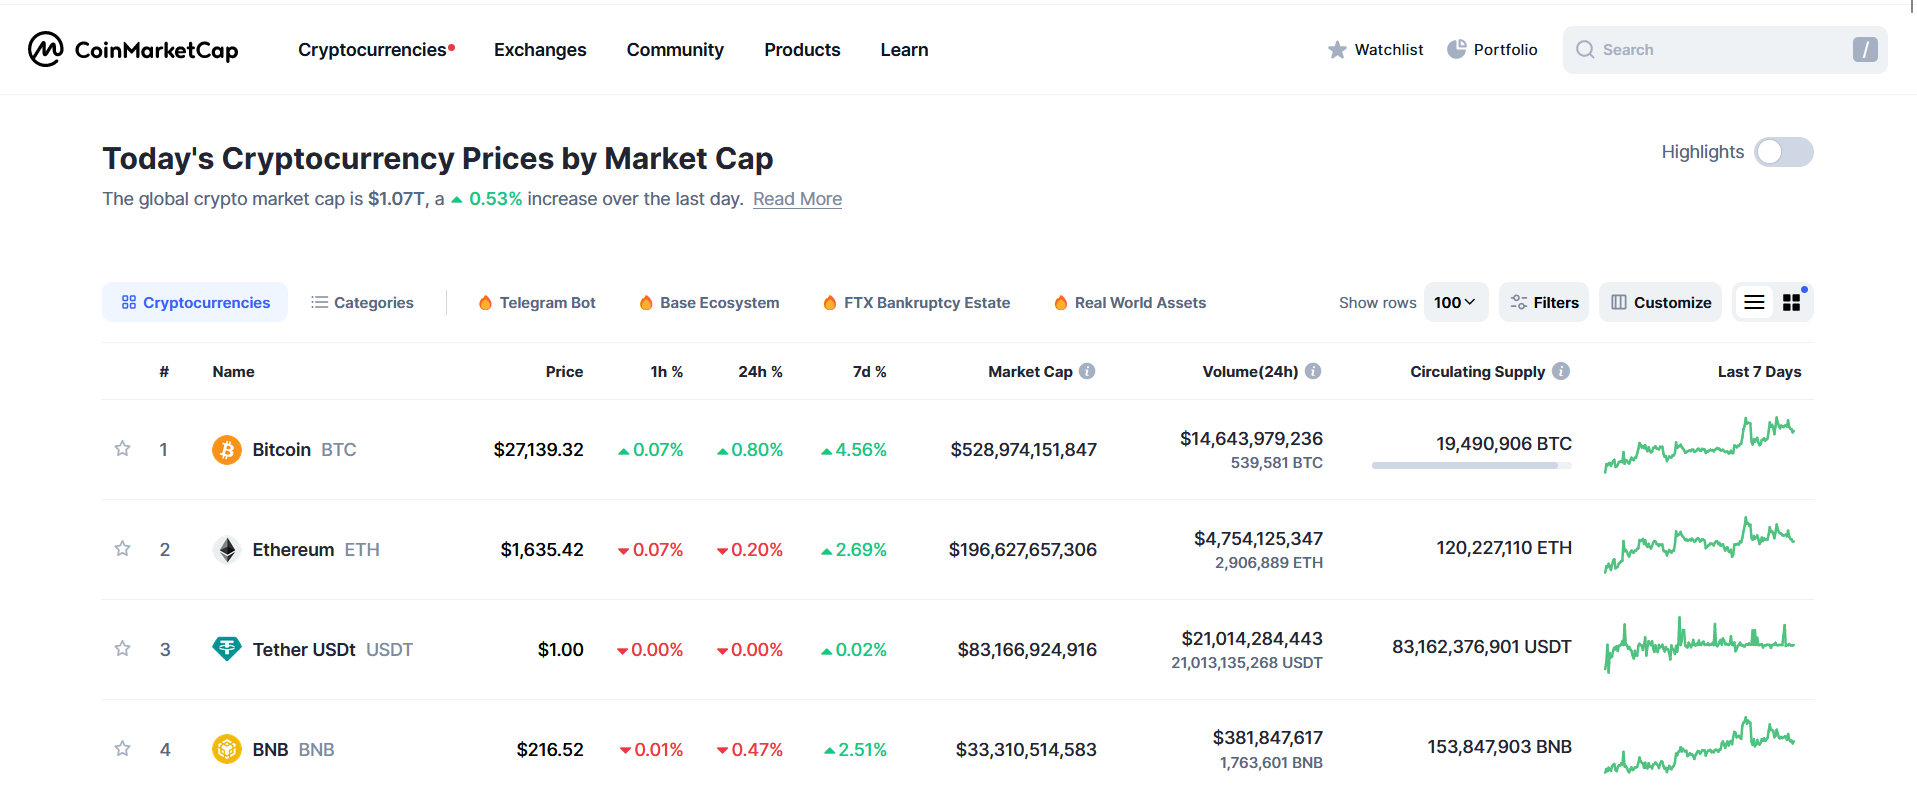 Captura de tela da página inicial do CoinMarketCap